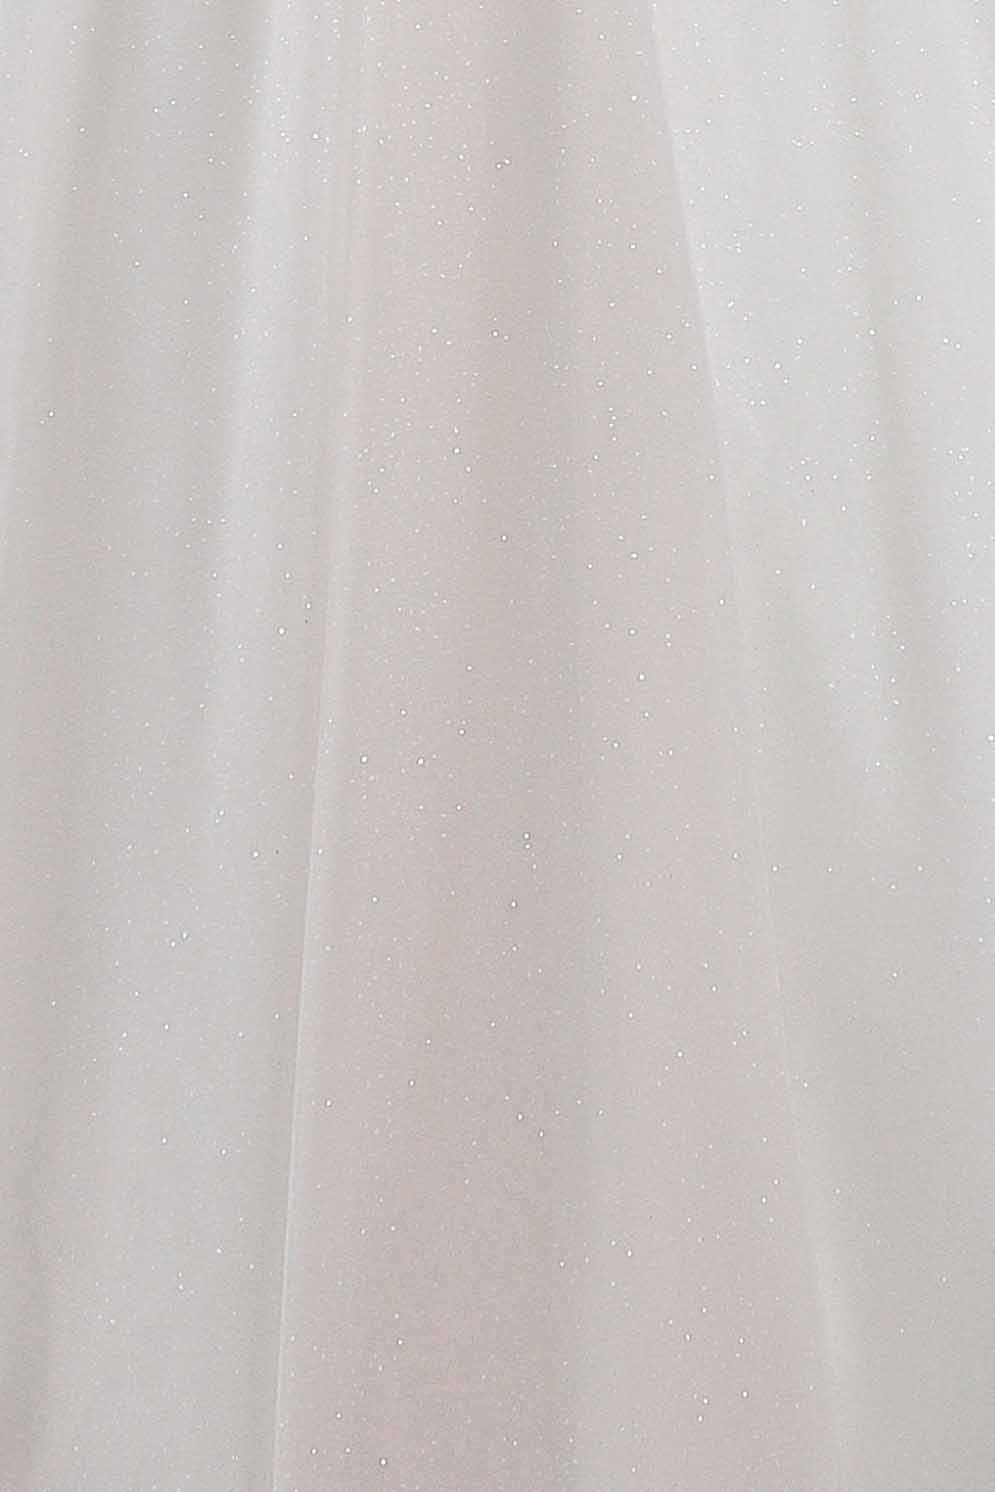 Schantal Brautkleid aus der Kollektion „Queen XXL“, Modell 2279 XXL. Foto 5